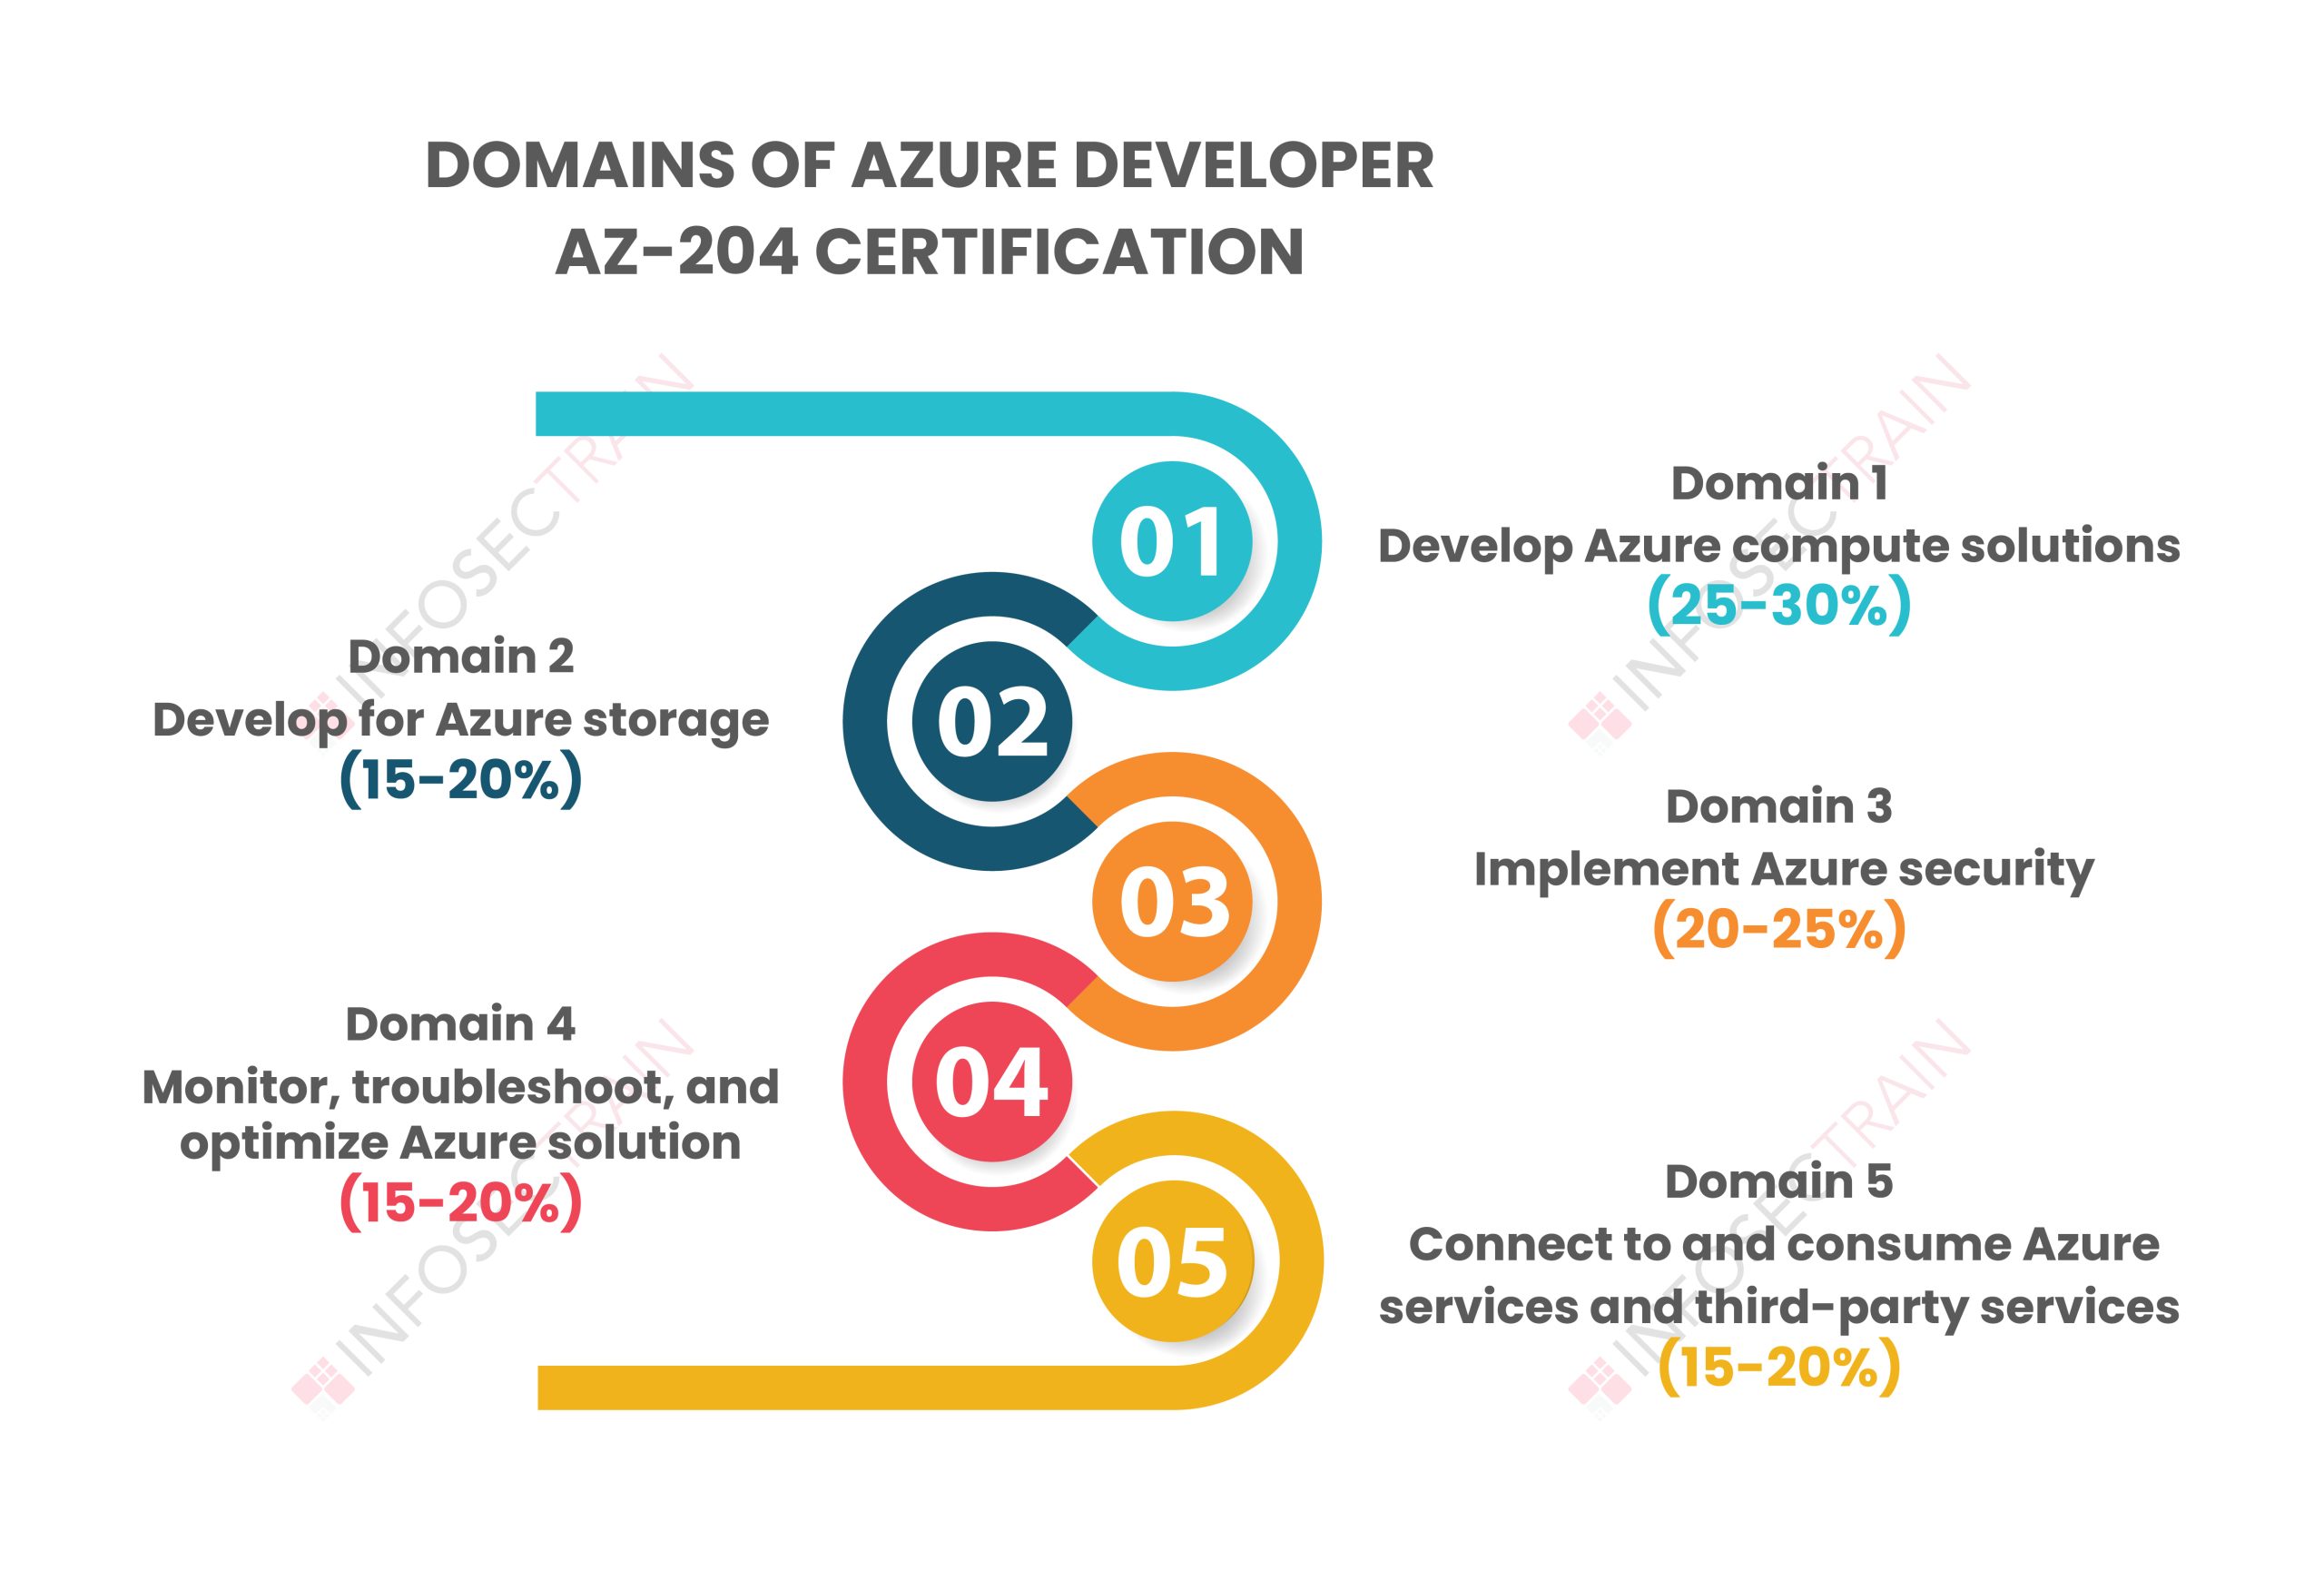 AZ-204 certification comprises a total of five domains